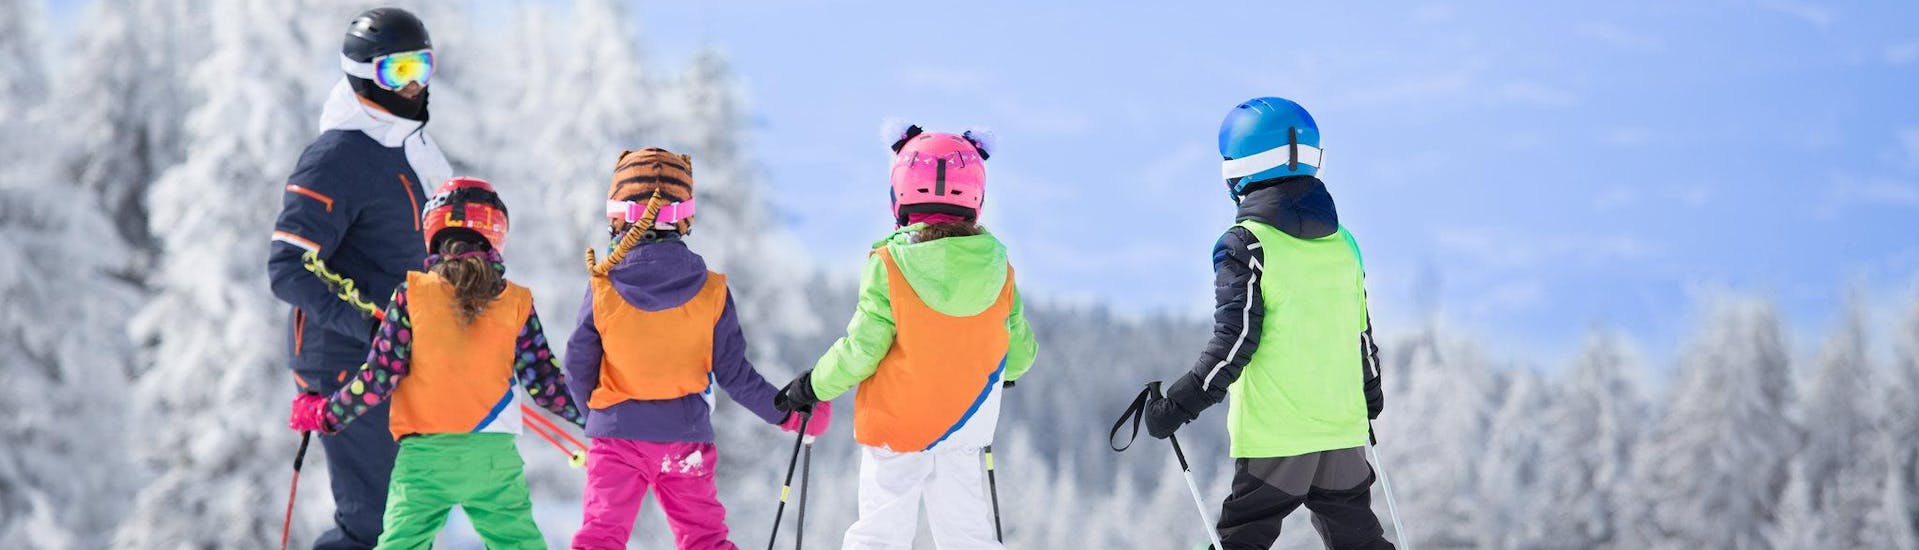 3 sciatori si preparano per uno dei corsi di sci in inglese in un comprensorio sciistico presso Limone Piemonte.